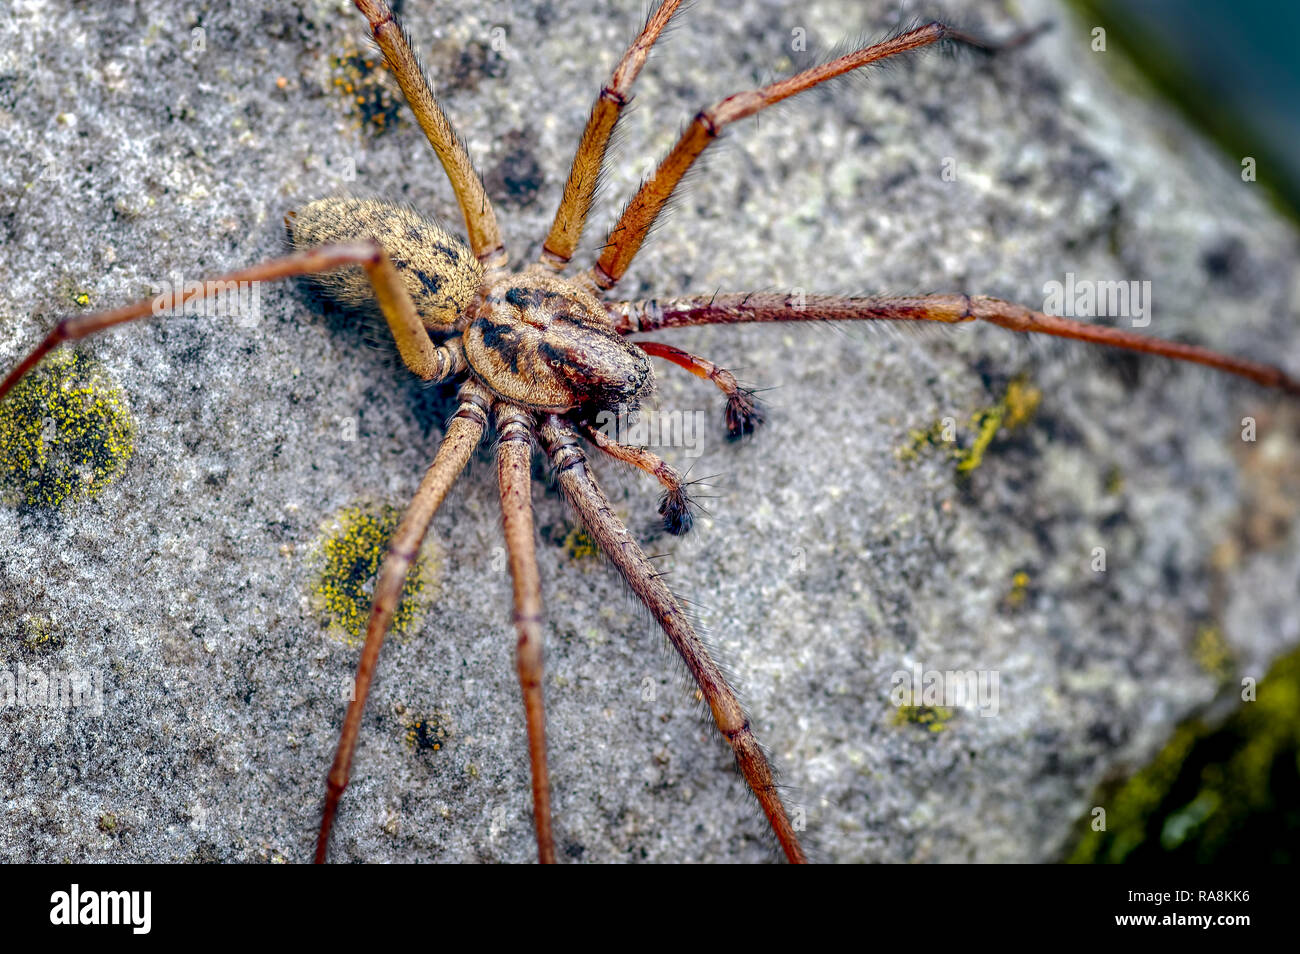 Dies ist ein männlicher Riese Haus Spider Tegenaria atrica Eratigena Topik genannt. Typisch ist das Männchen zu sehen, wie der weibliche verborgen bleibt. Stockfoto